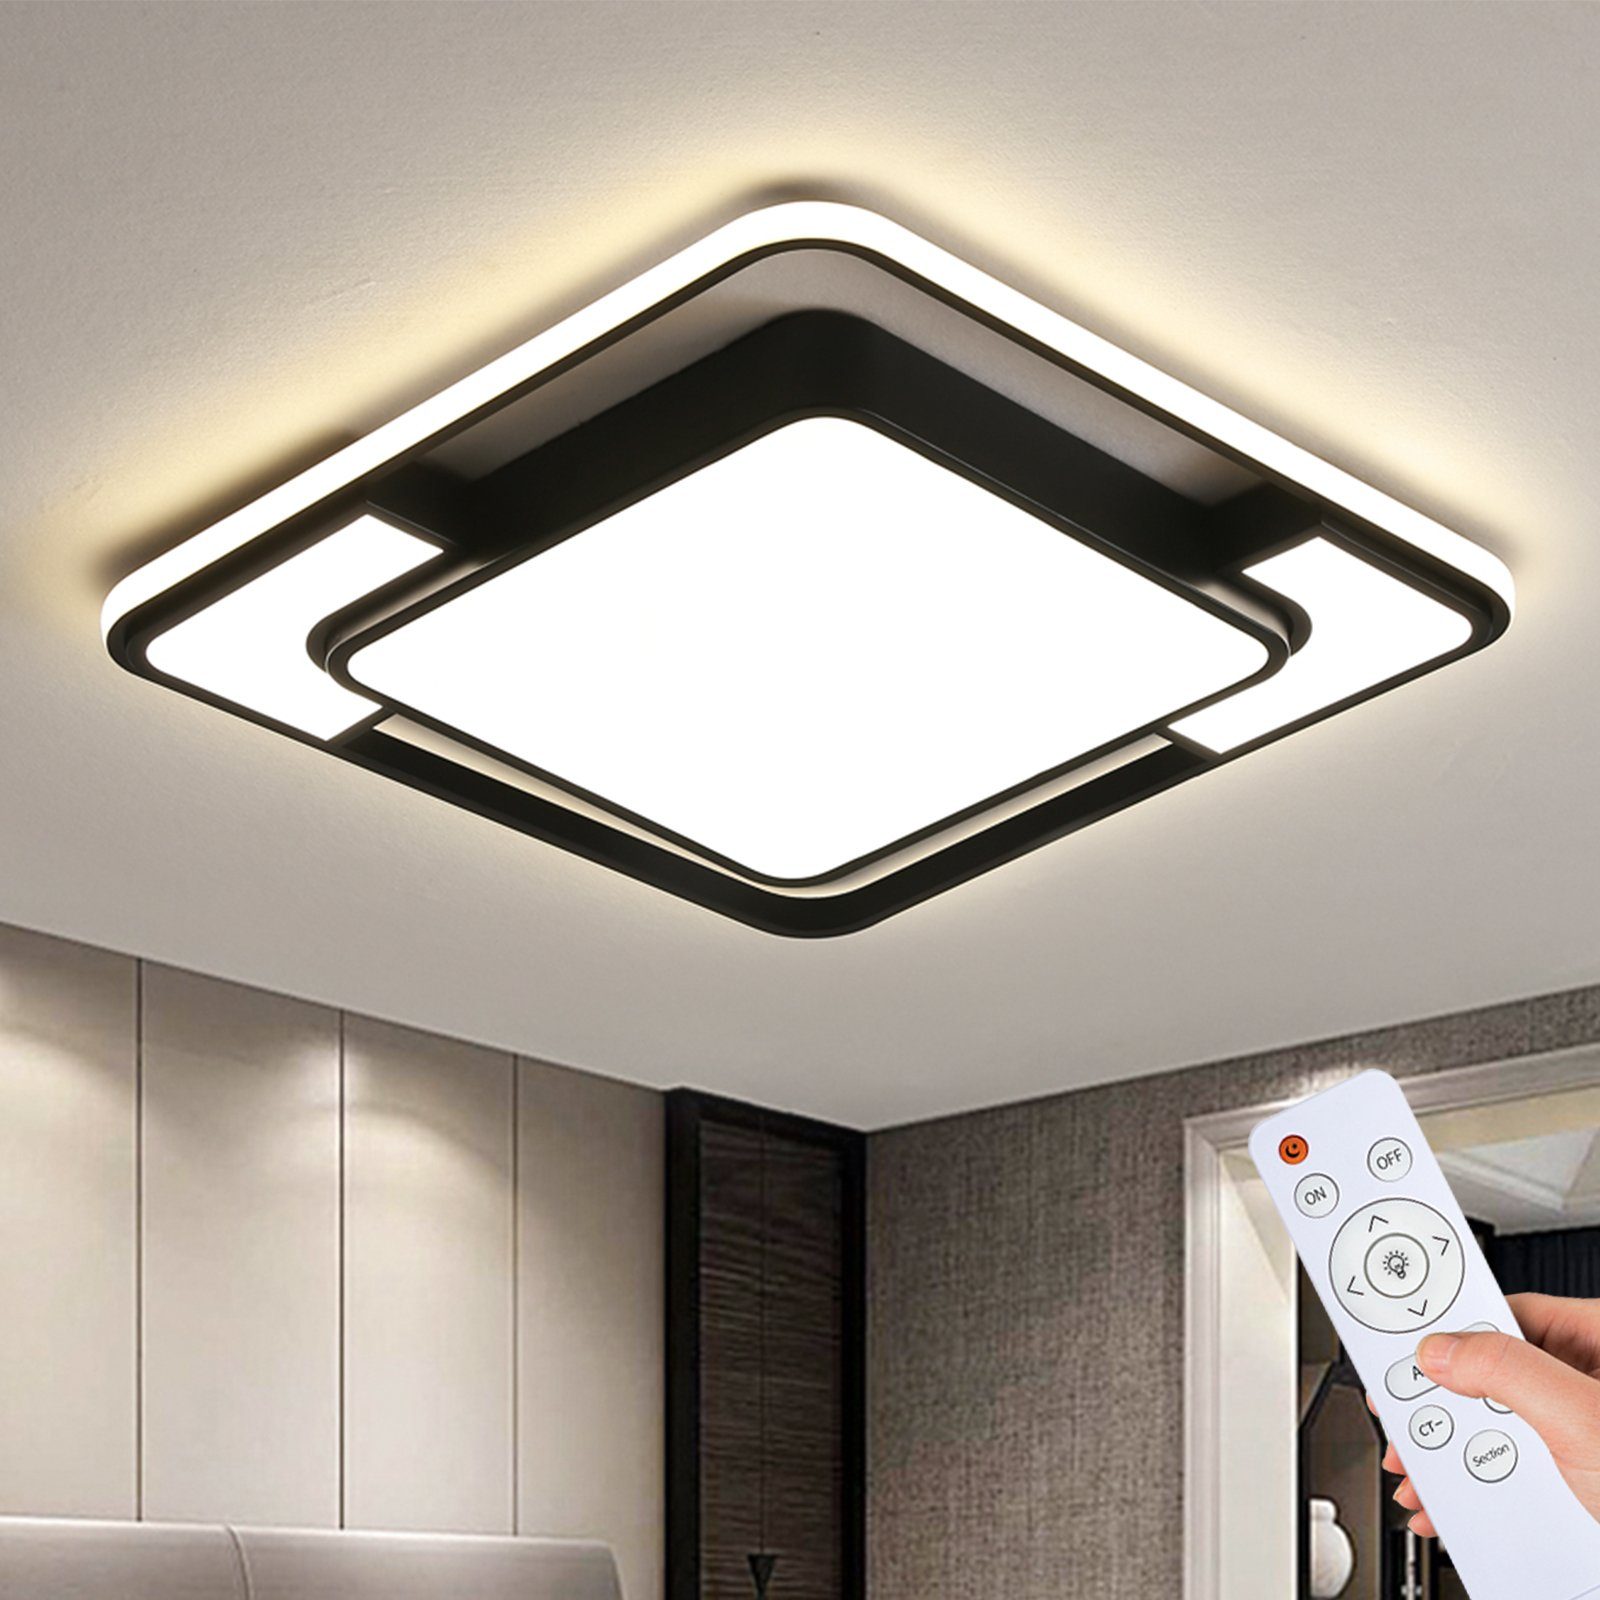 Smart LED Decken Leuchte DIMMBAR Tageslicht Farbwechsel Spot Lampe schwenkbar 